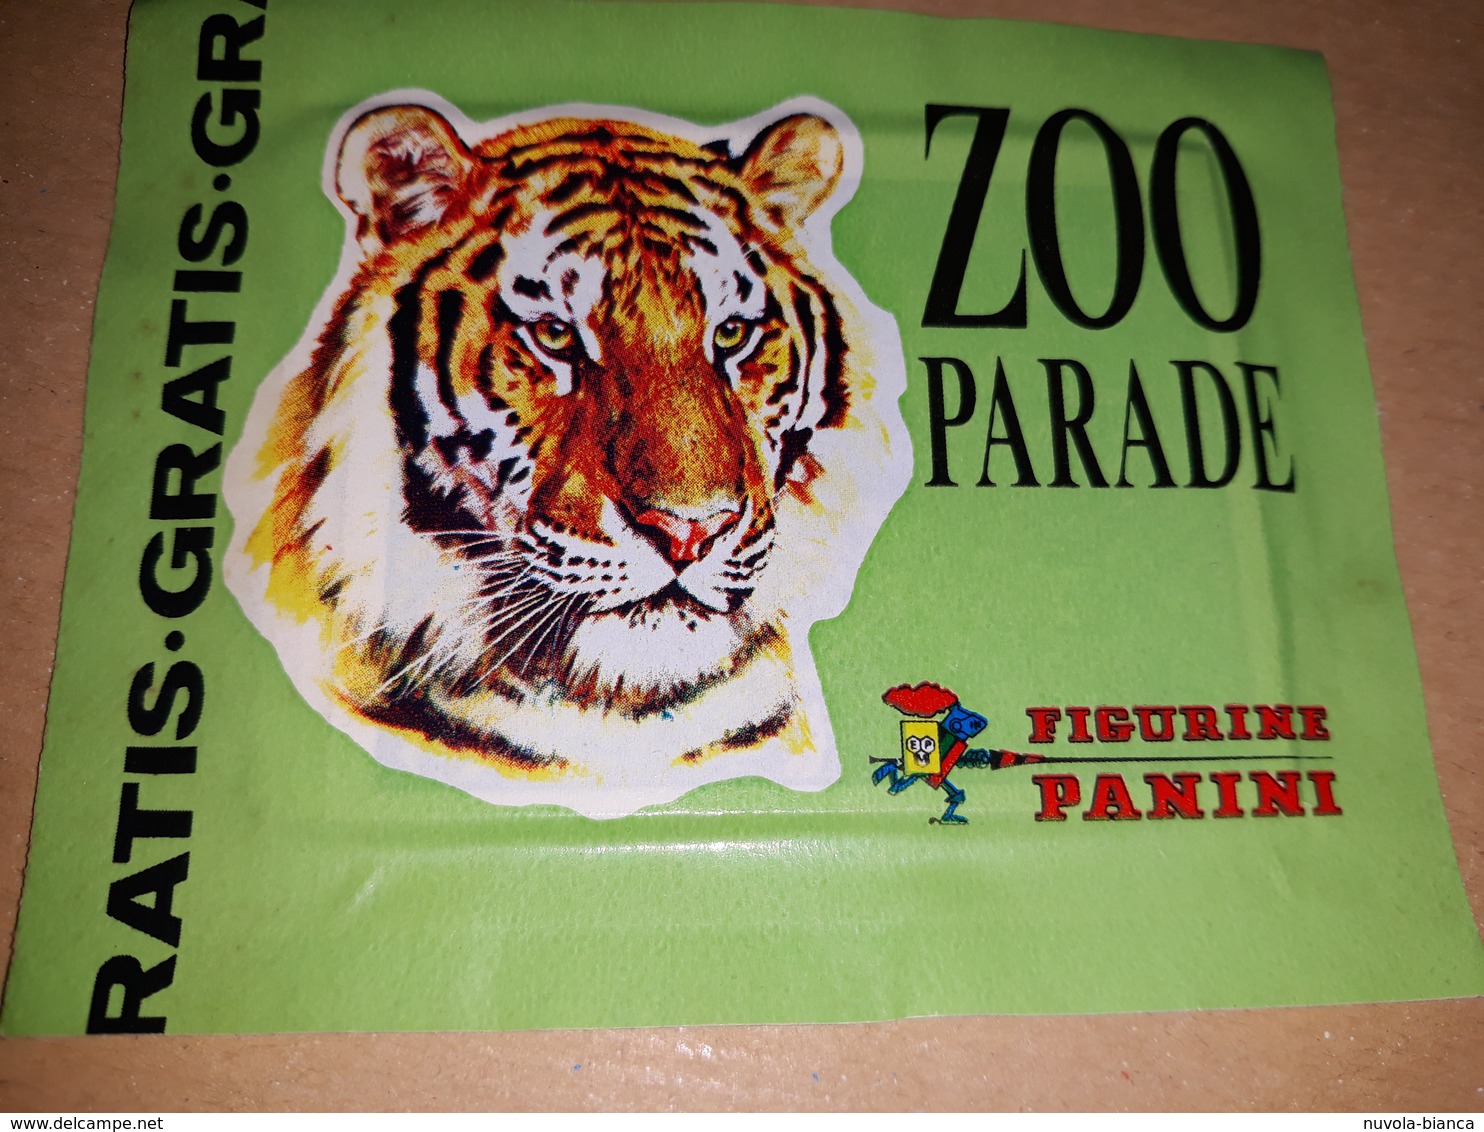 Zoo Parade Bustina Con Figurine Panini.tigre Edizione Gratis - Italian Edition